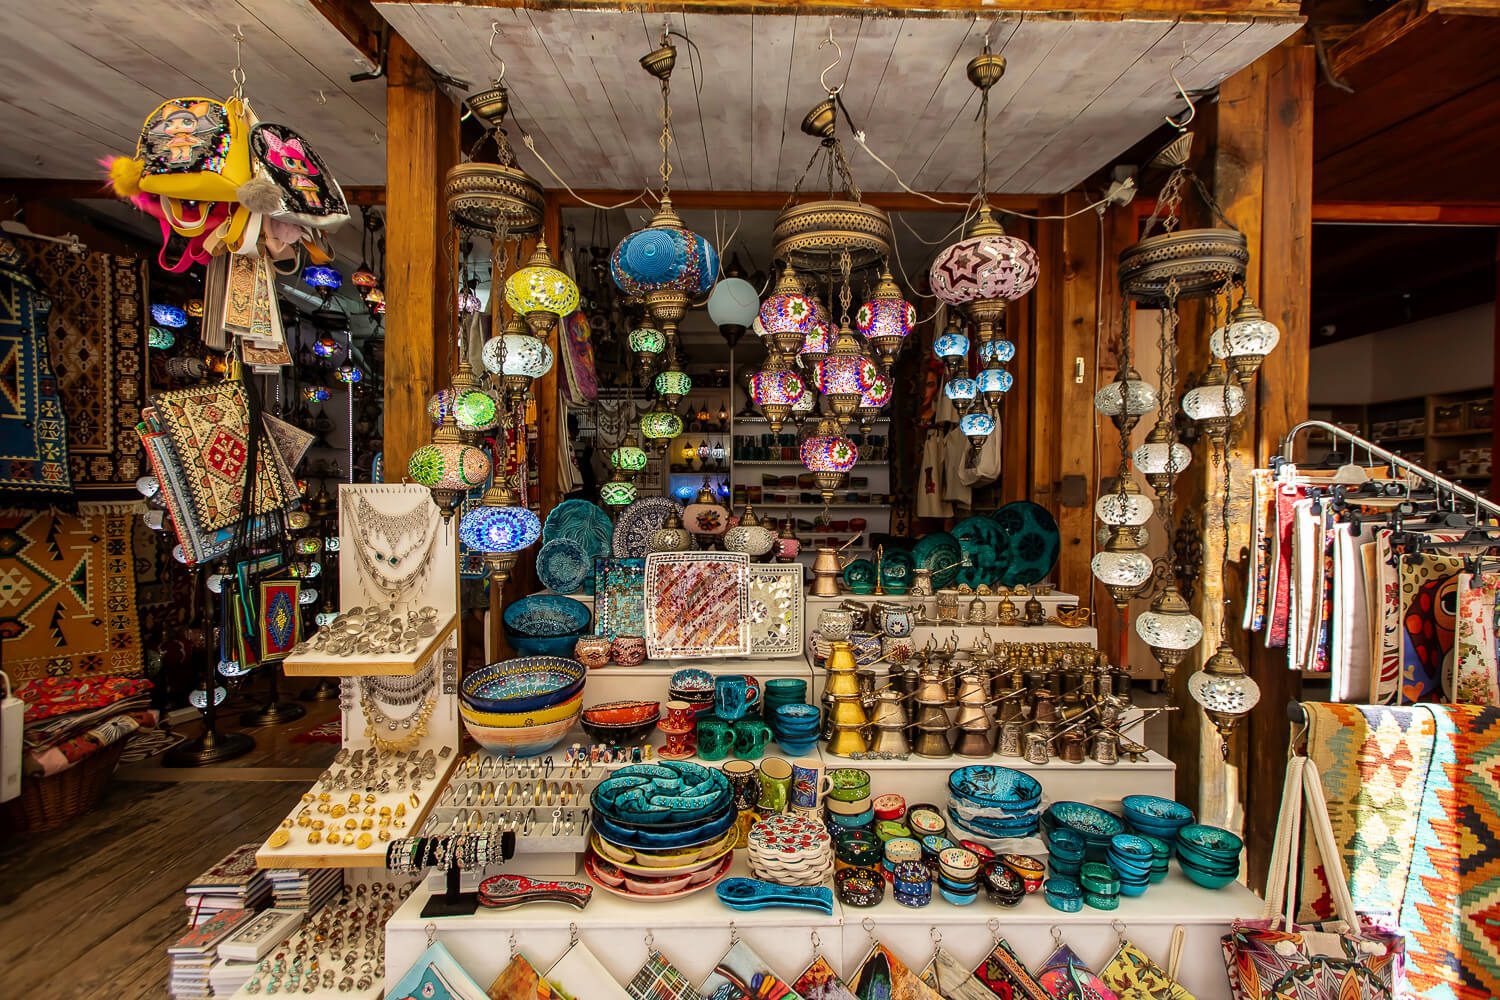 The old bazaar in Mostar